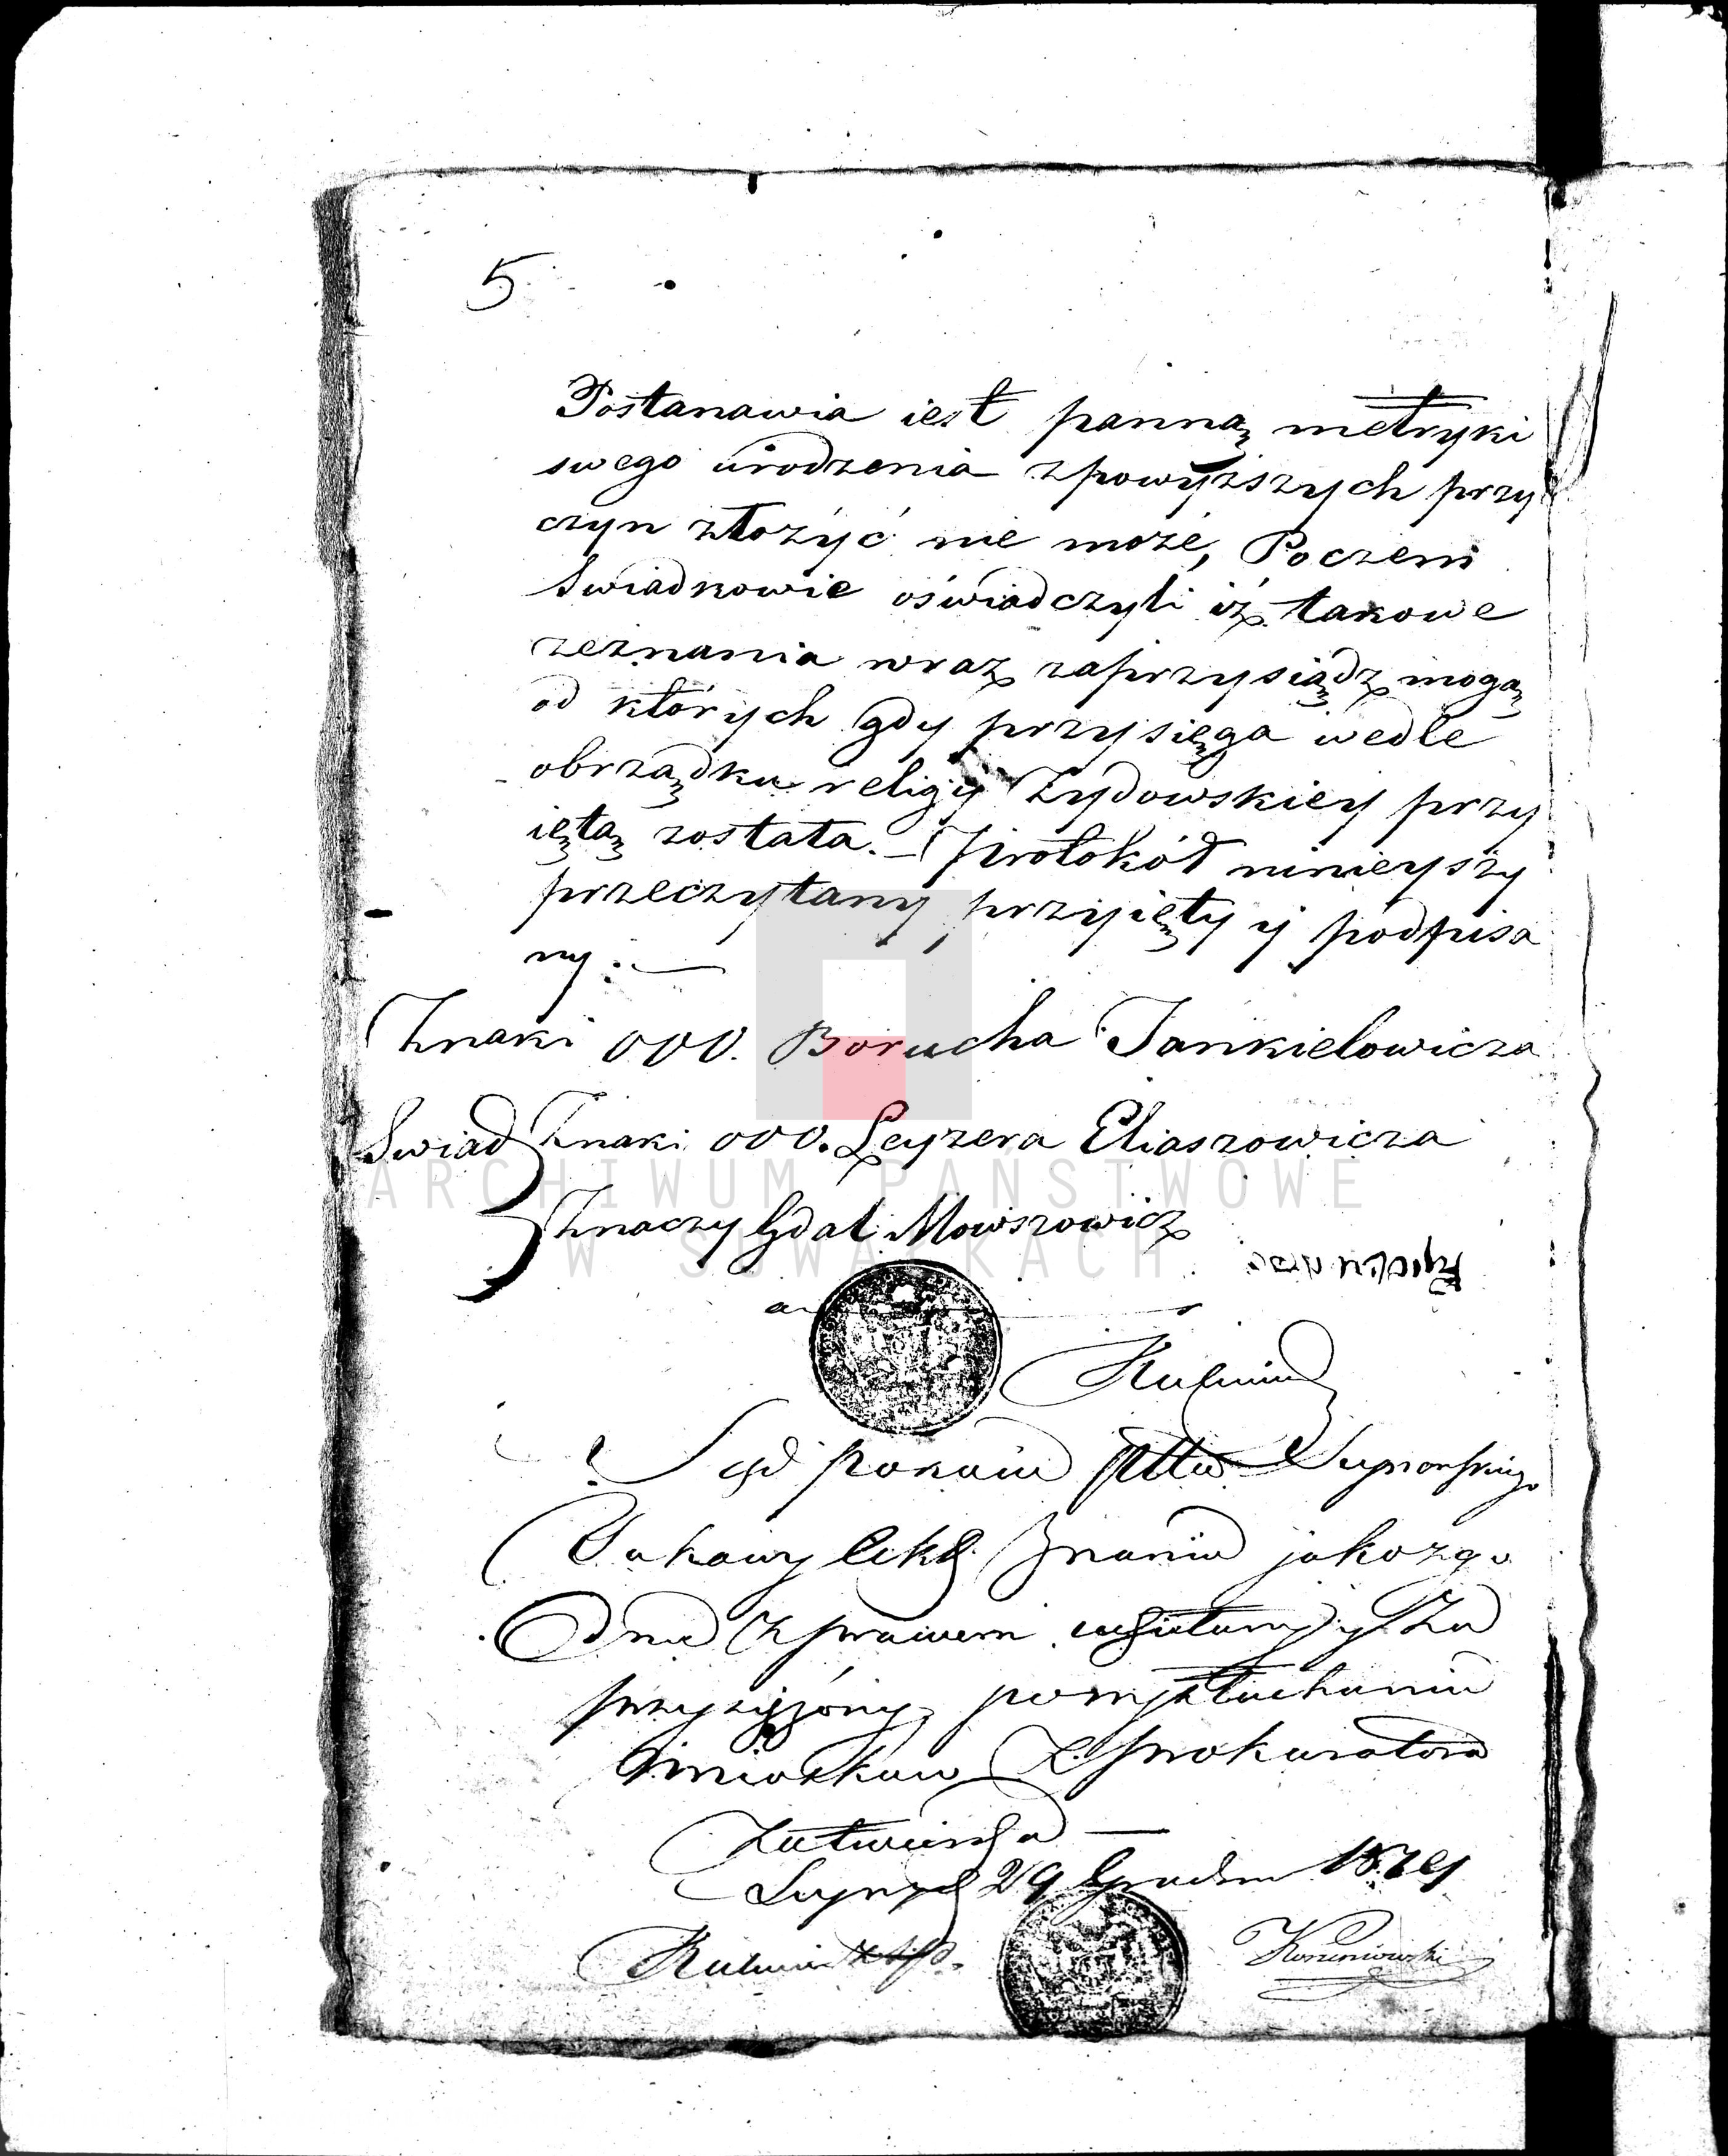 Skan z jednostki: Dowody służące do akt zaślubionych gminy wiżaynskiej, powiatu seynenskiego w woiewództwie augustowskim na rok 1820